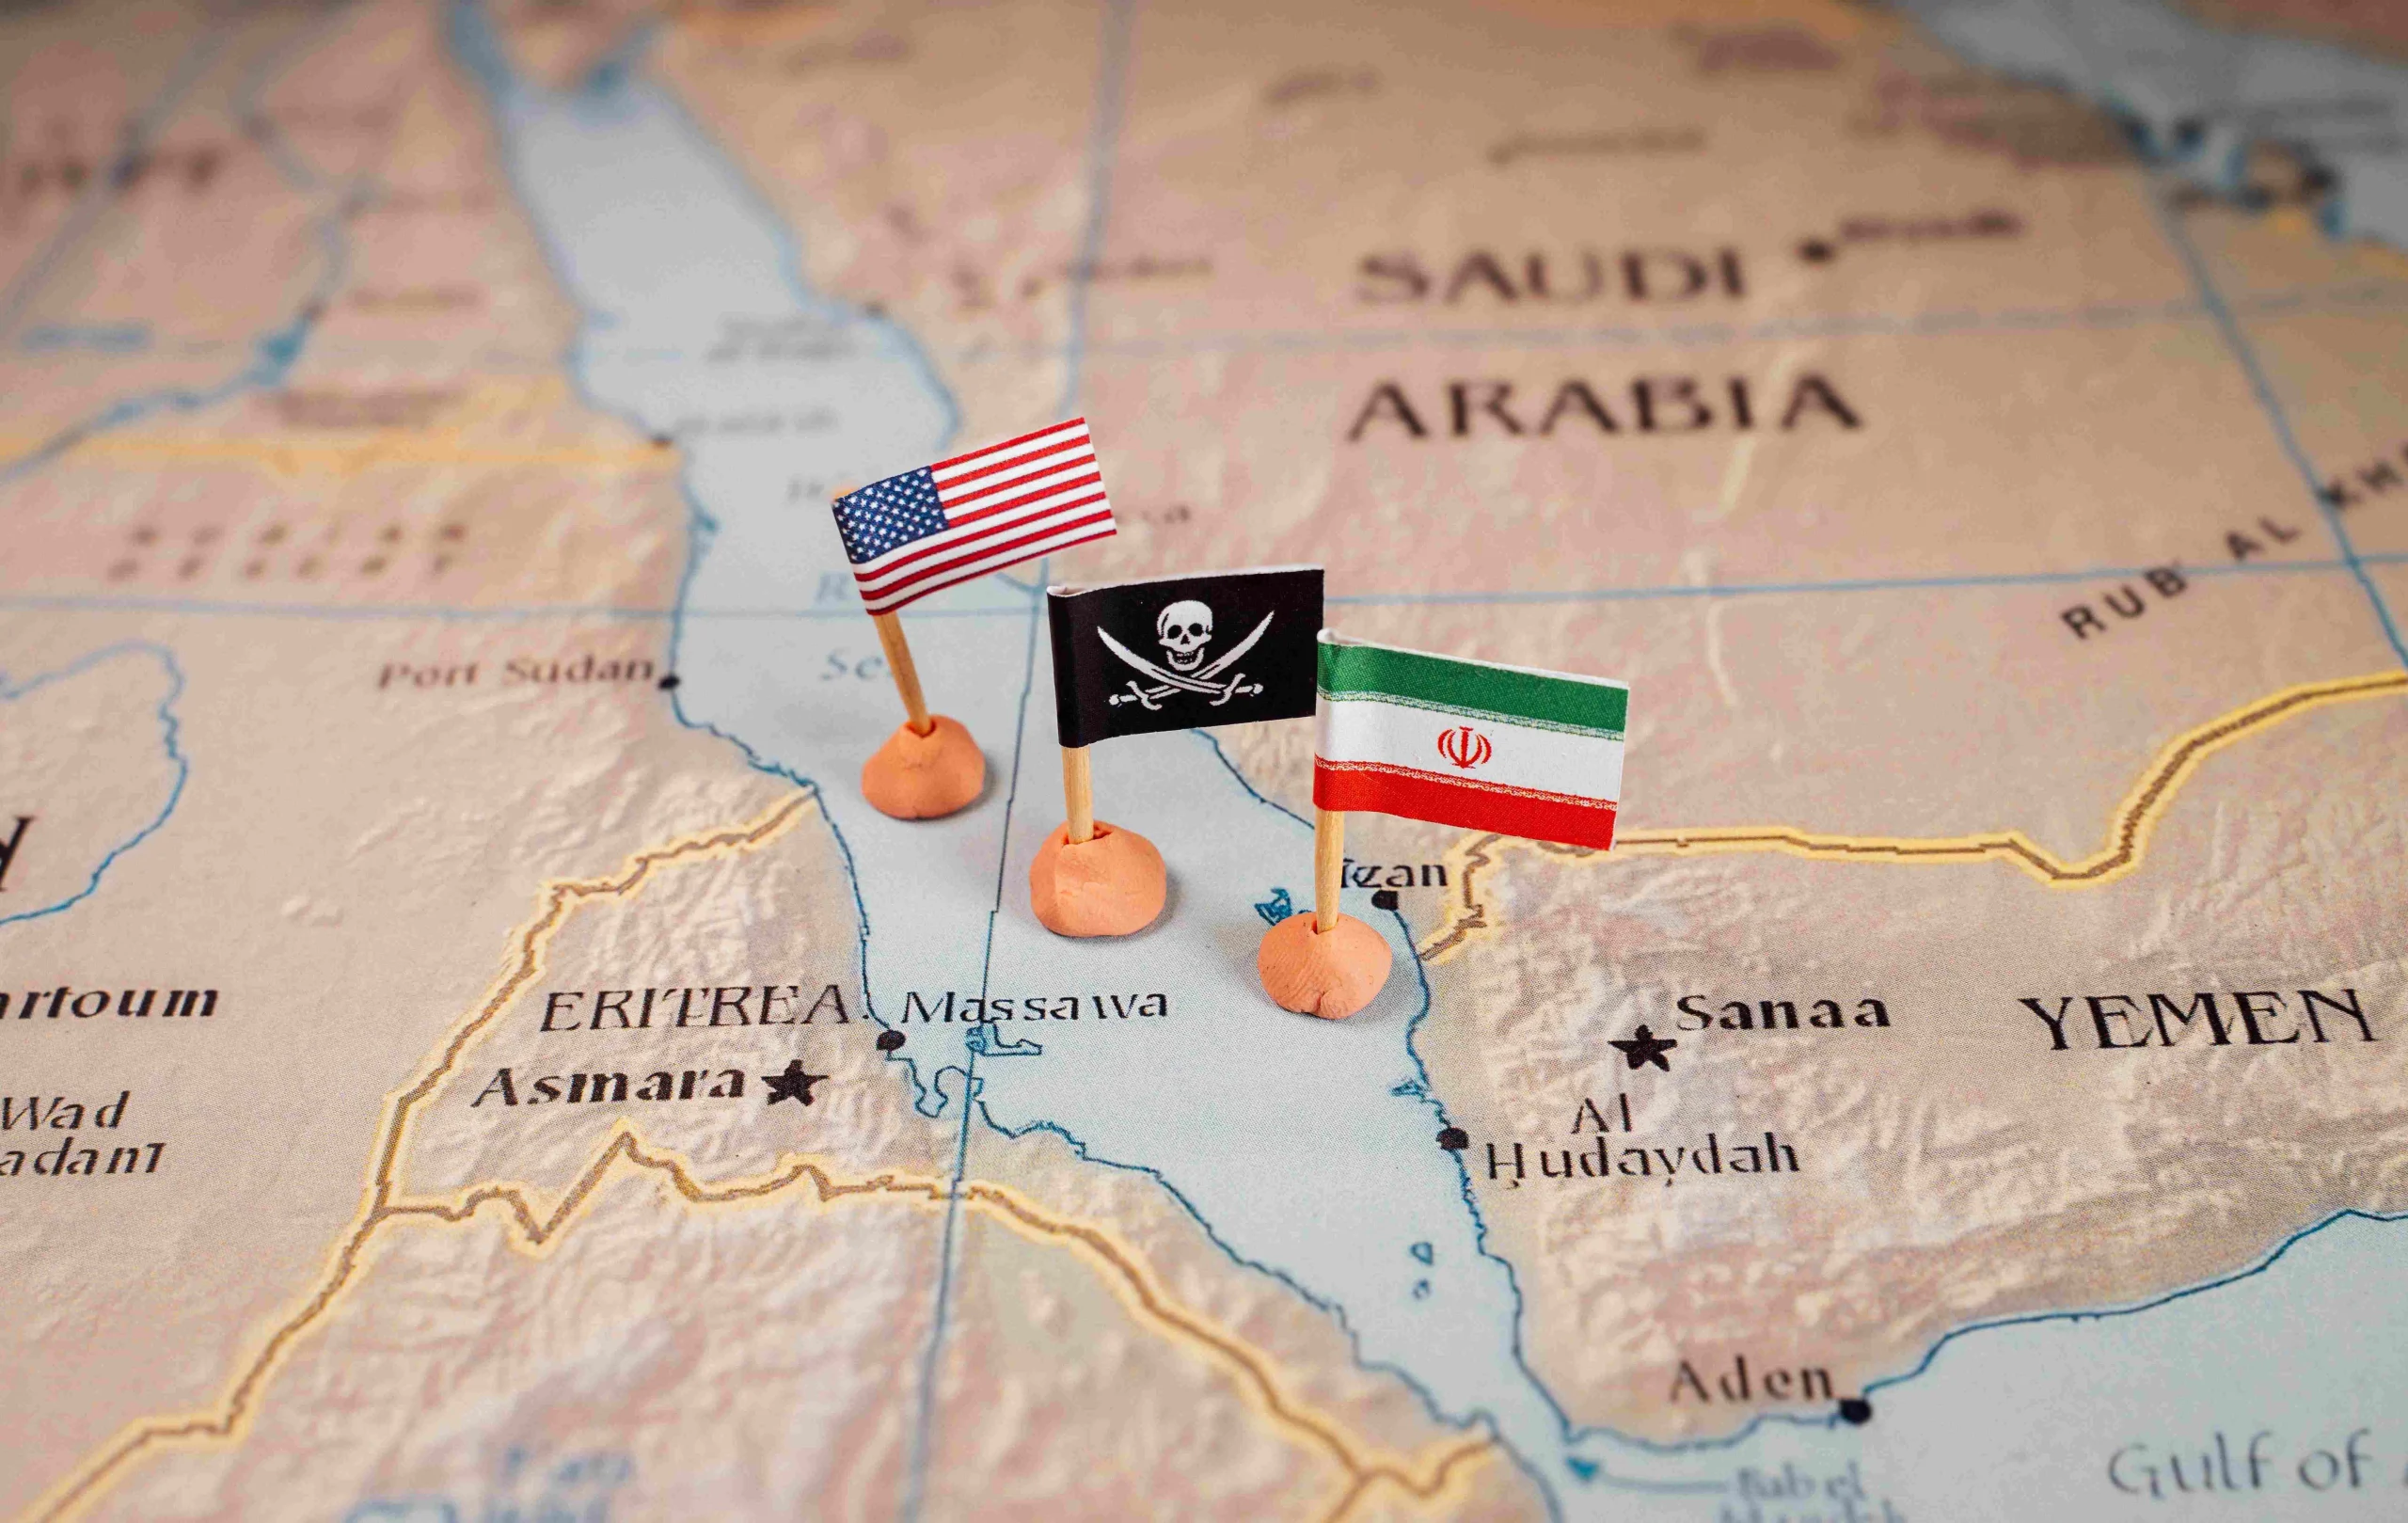 حمله سایبری آمریکا به کشتی ایرانی بهشاد